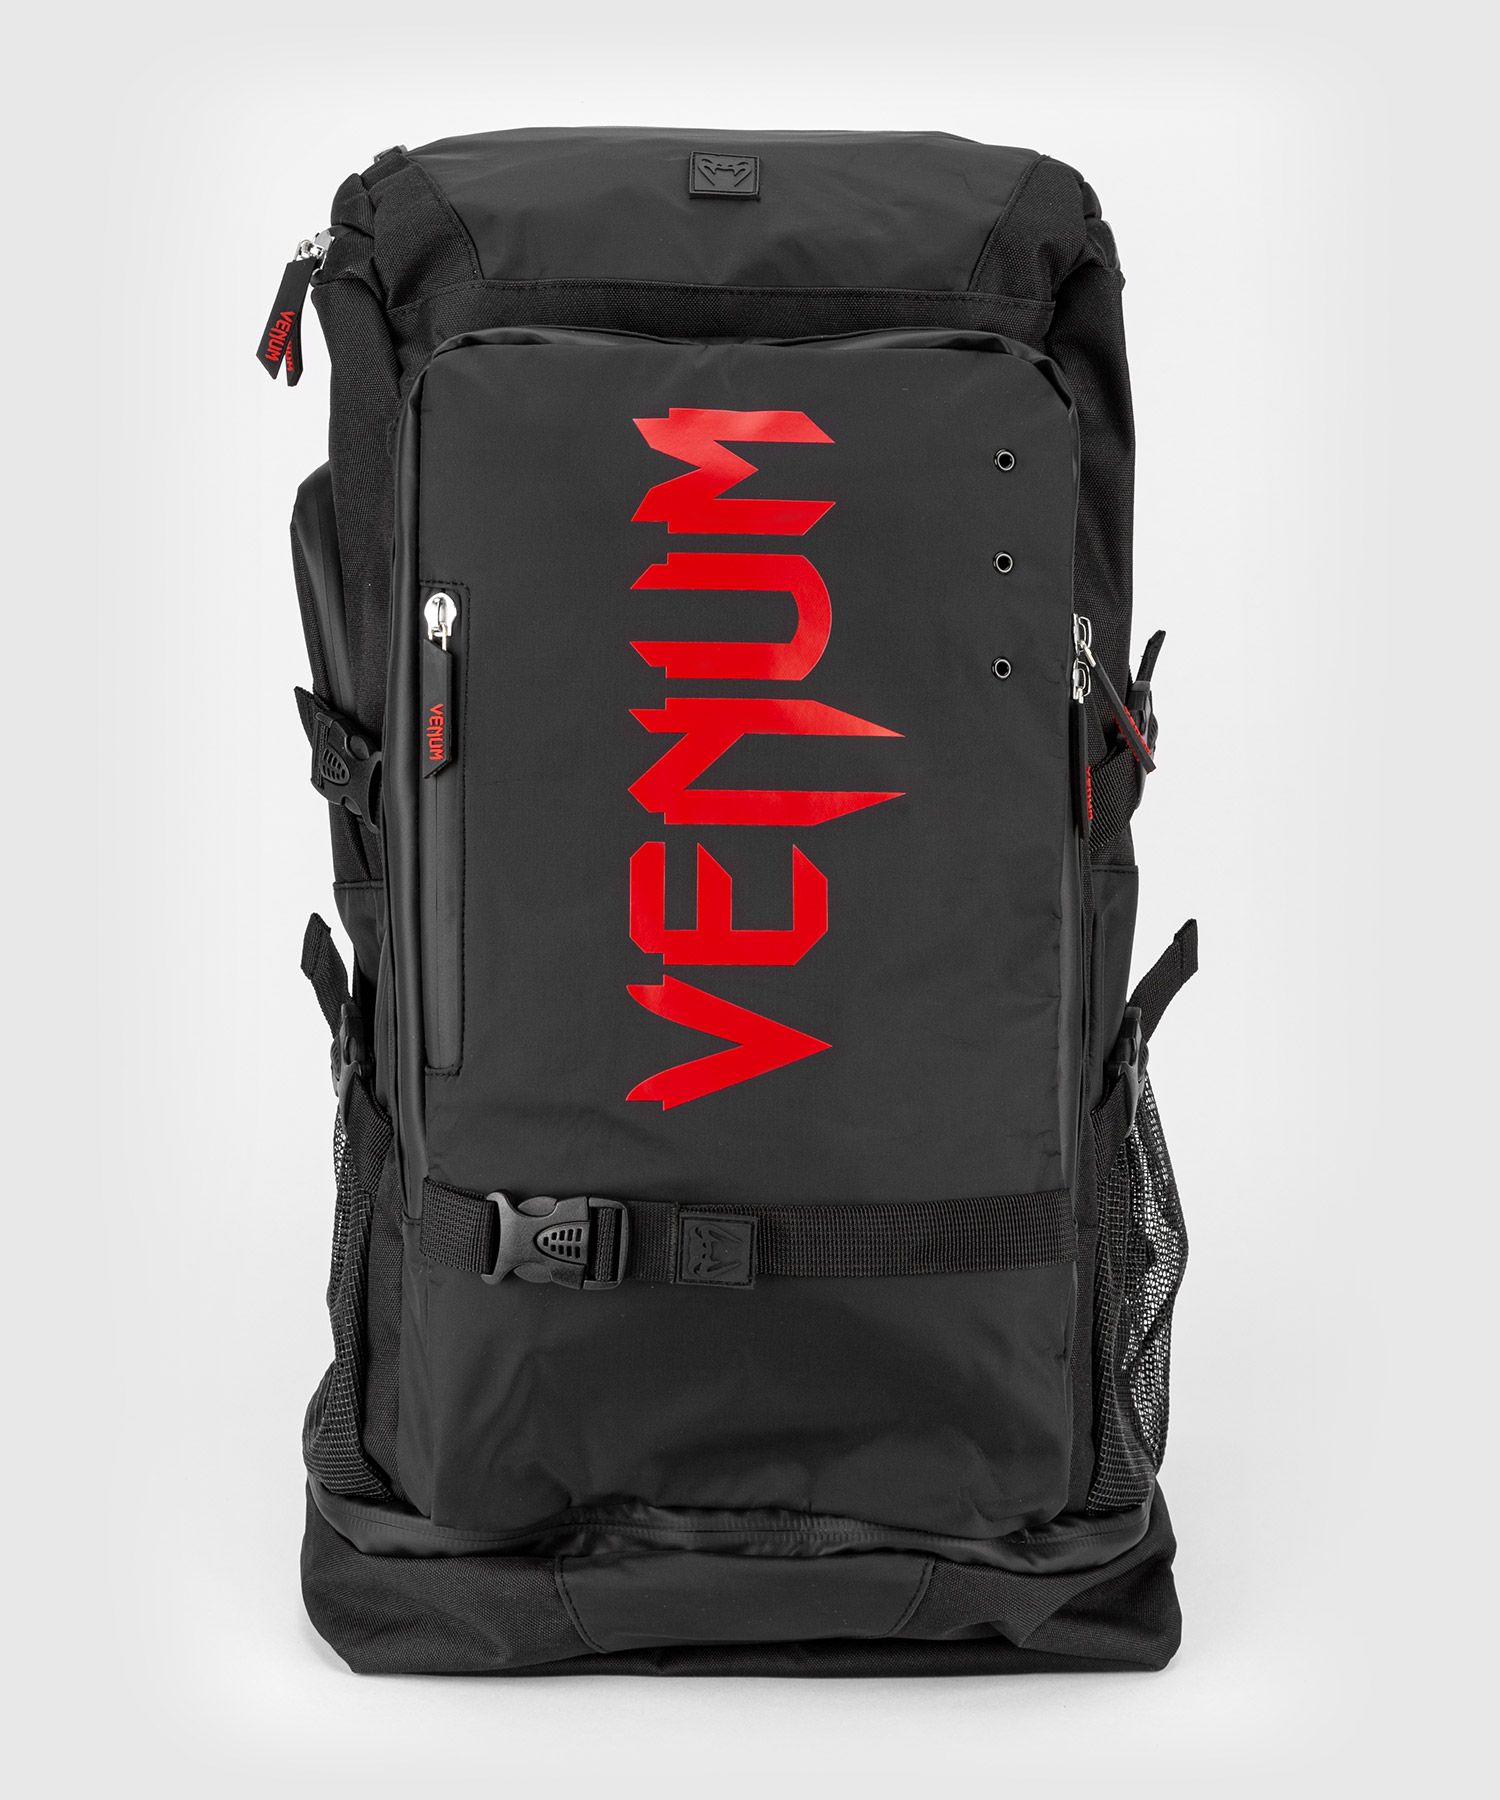 Venum Challenger Xtrem Evo BackPack - Black/Red - Venum.com Europe